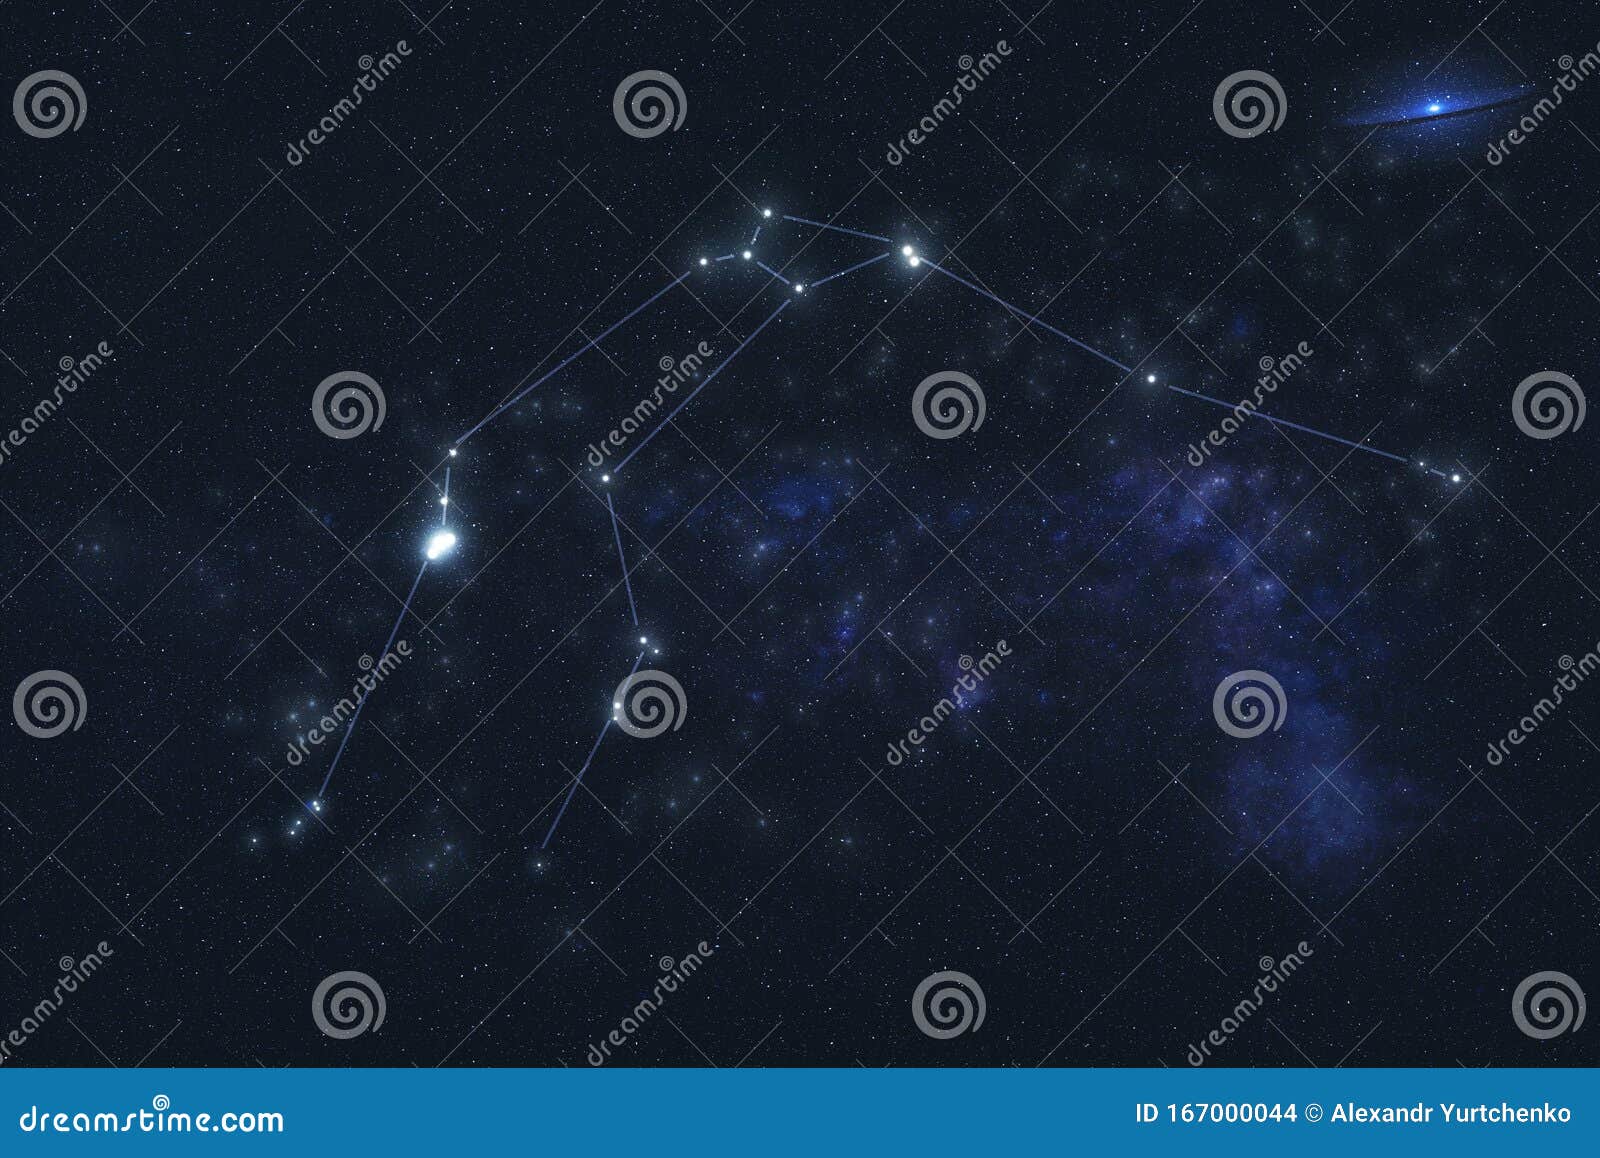 aquarius constellation in outer space